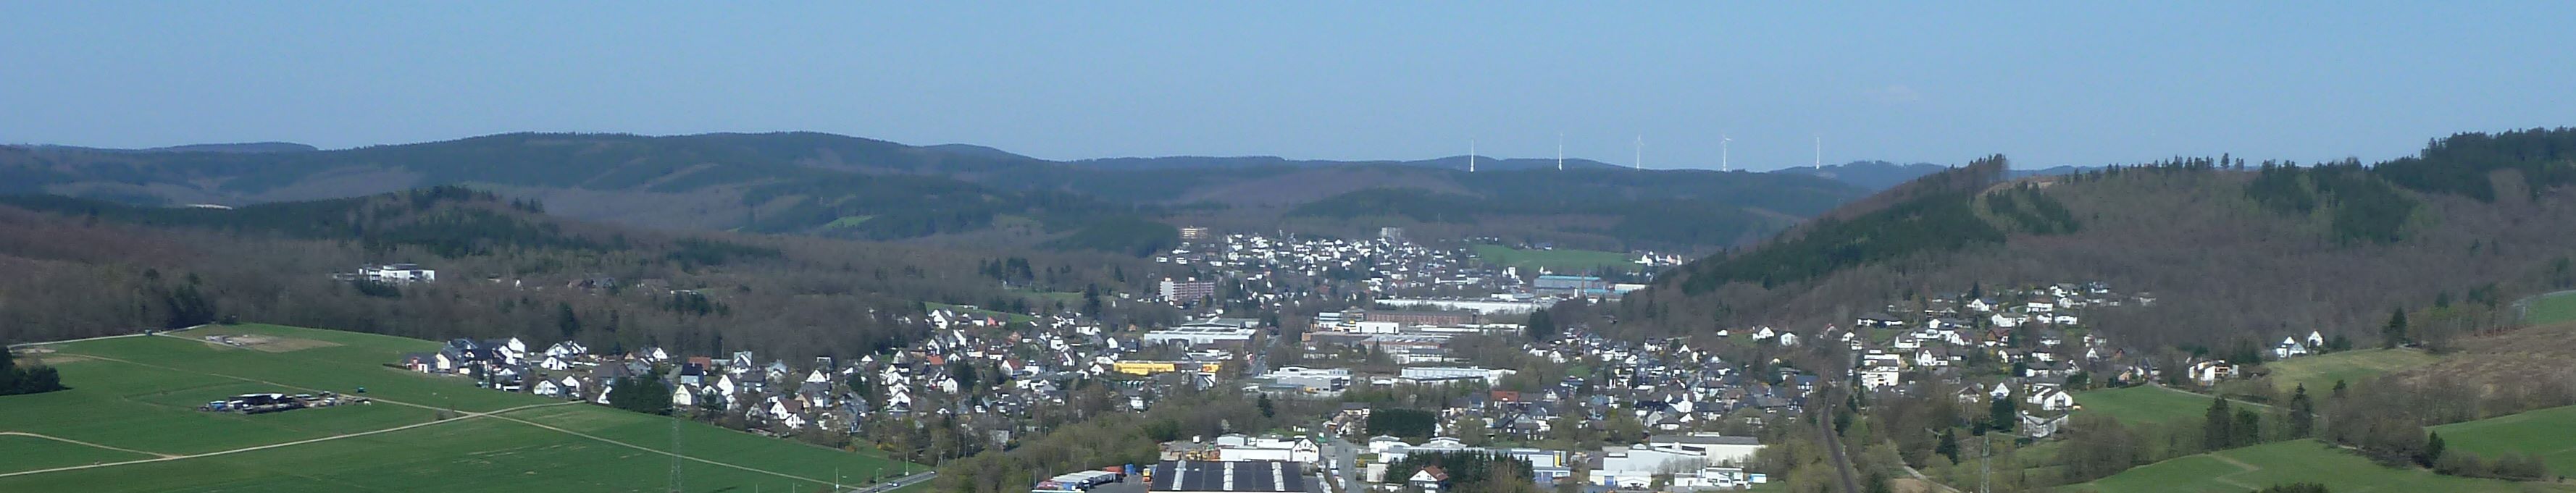 Kredenbach im Siegerland